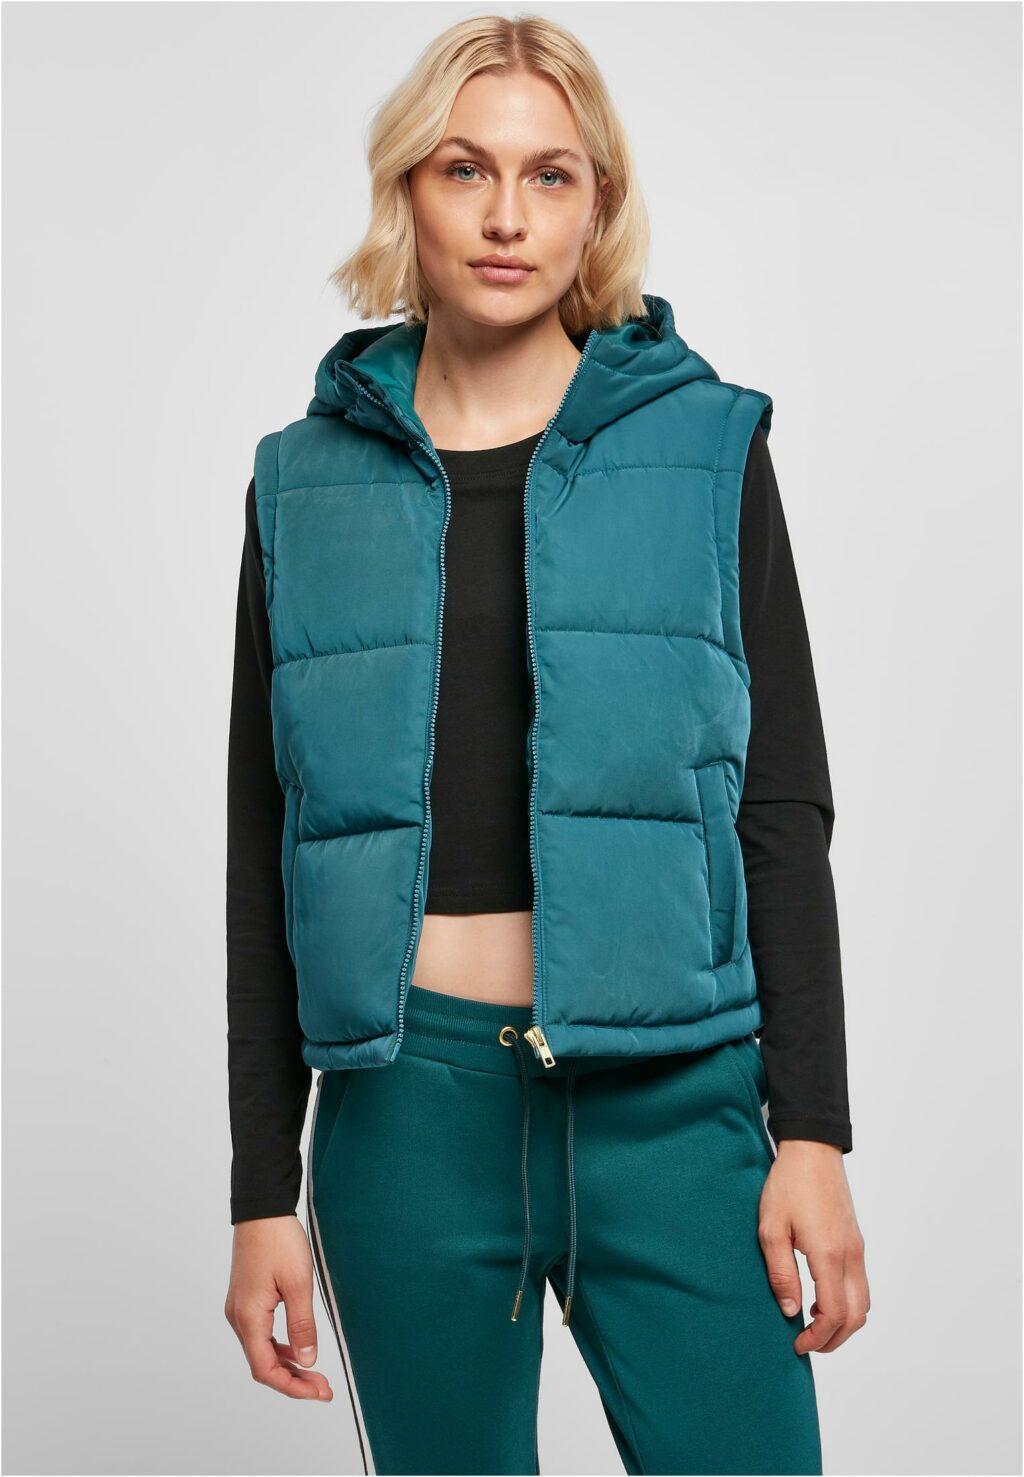 Urban Classics Ladies Recycled Twill Puffer Vest jasper TB5083